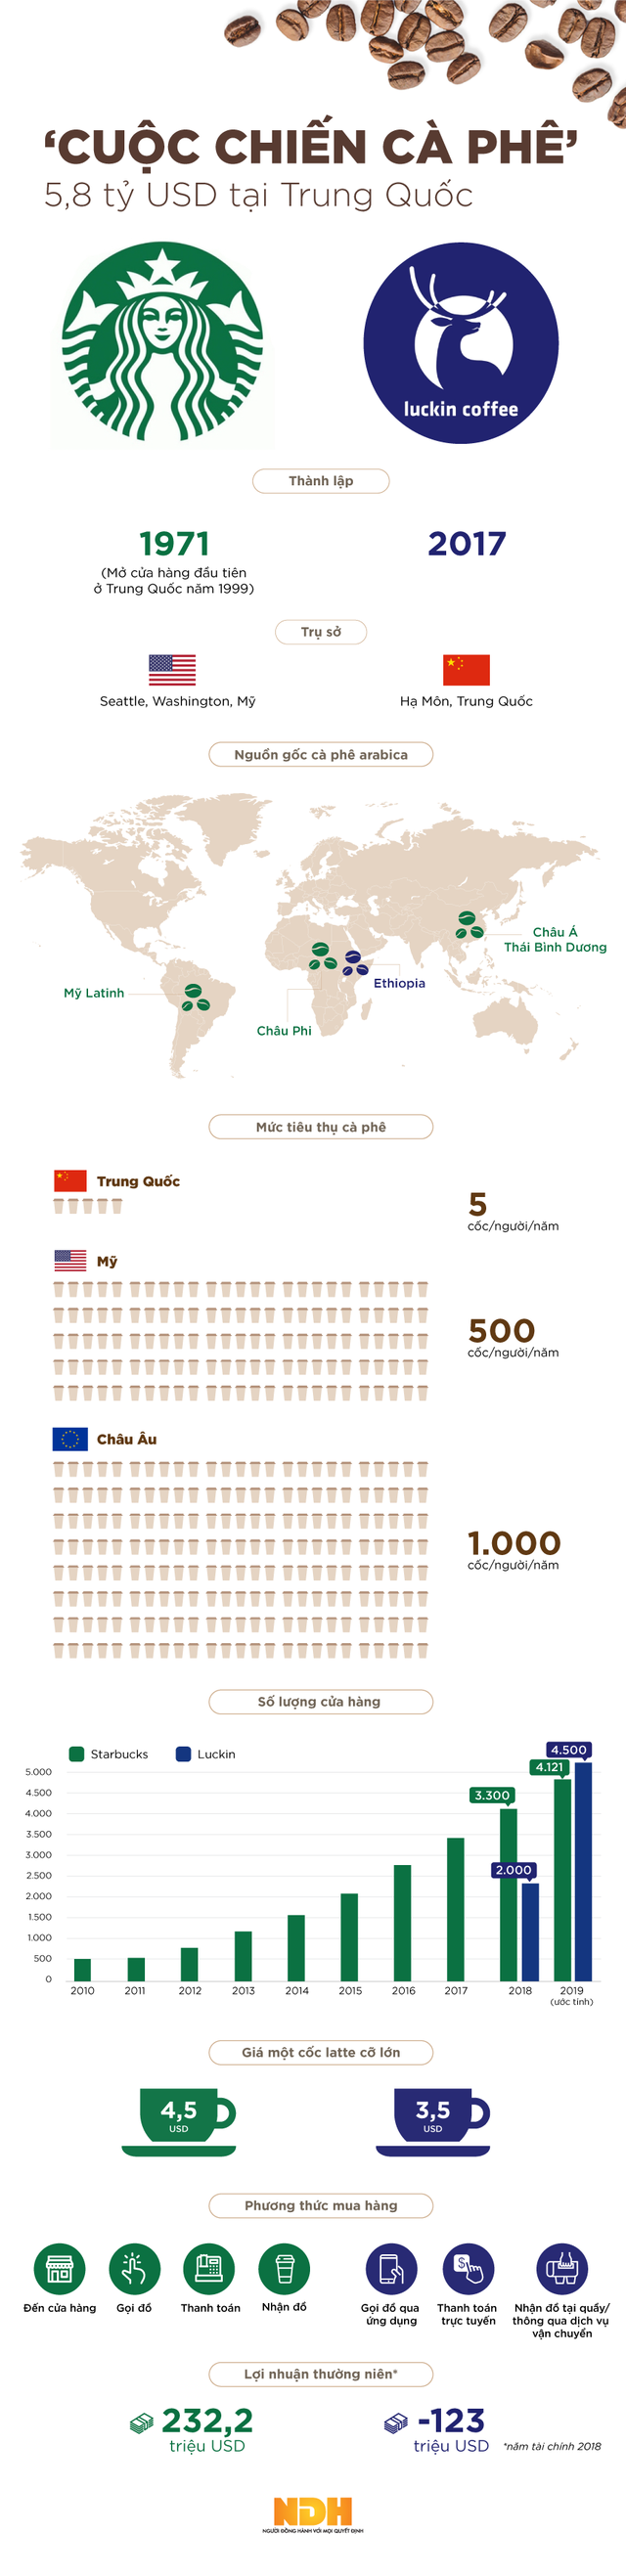  [Infographic] Cuộc chiến cà phê 5,8 tỷ USD ở Trung Quốc  - Ảnh 1.